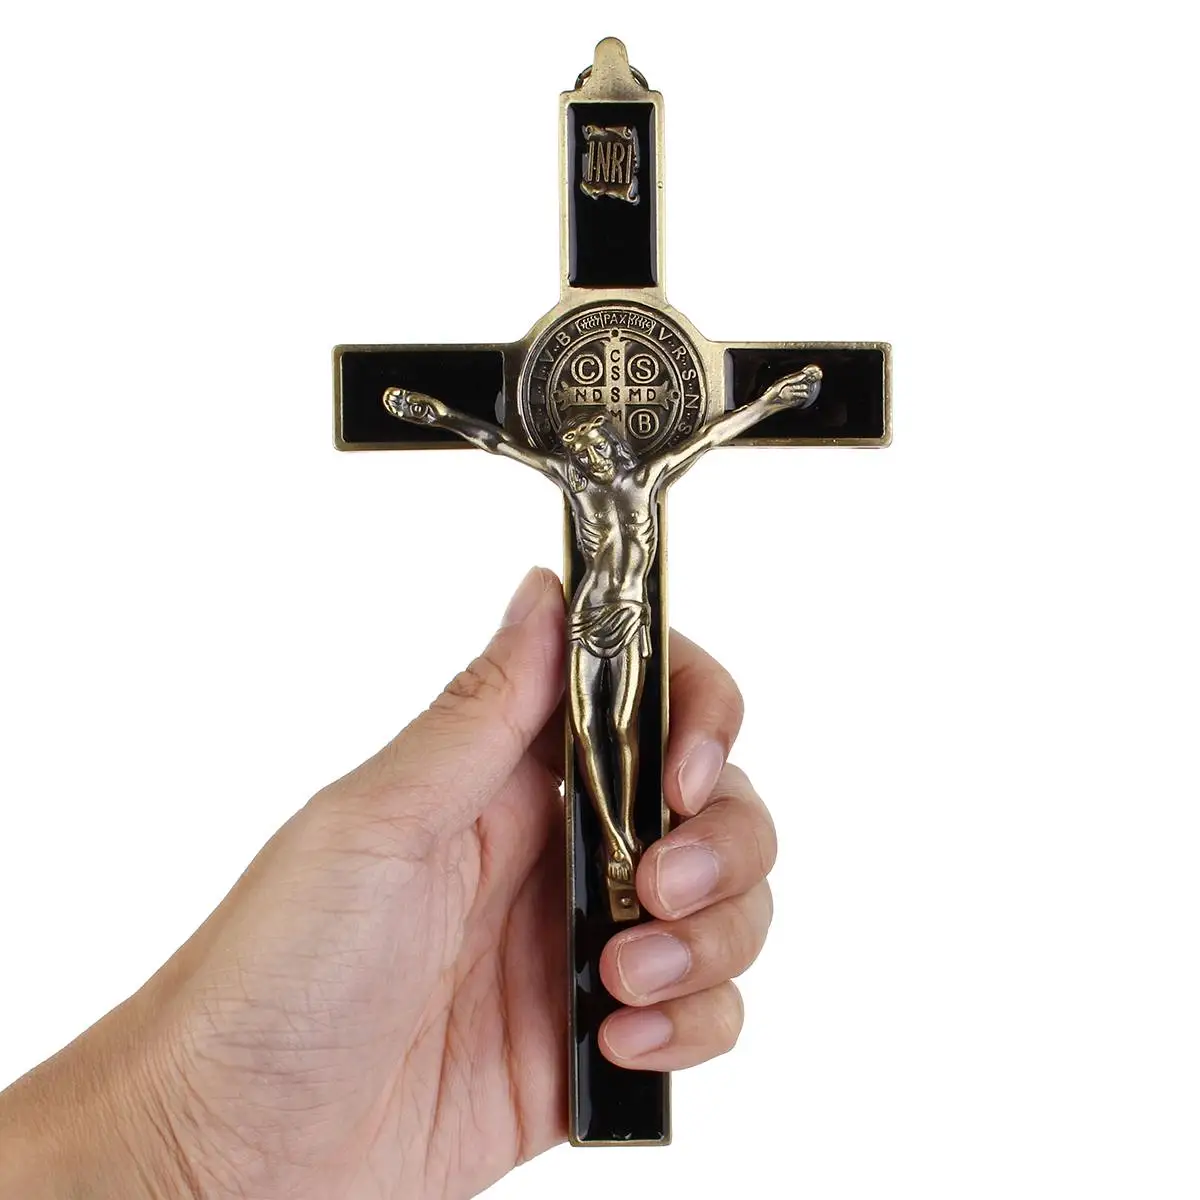 

Настенный Крест с распятием, крест Иисуса Христа, религиозный день, 3D ремесло, декор Иисуса Христа на подставке, античное украшение, 19,5x9,5 см